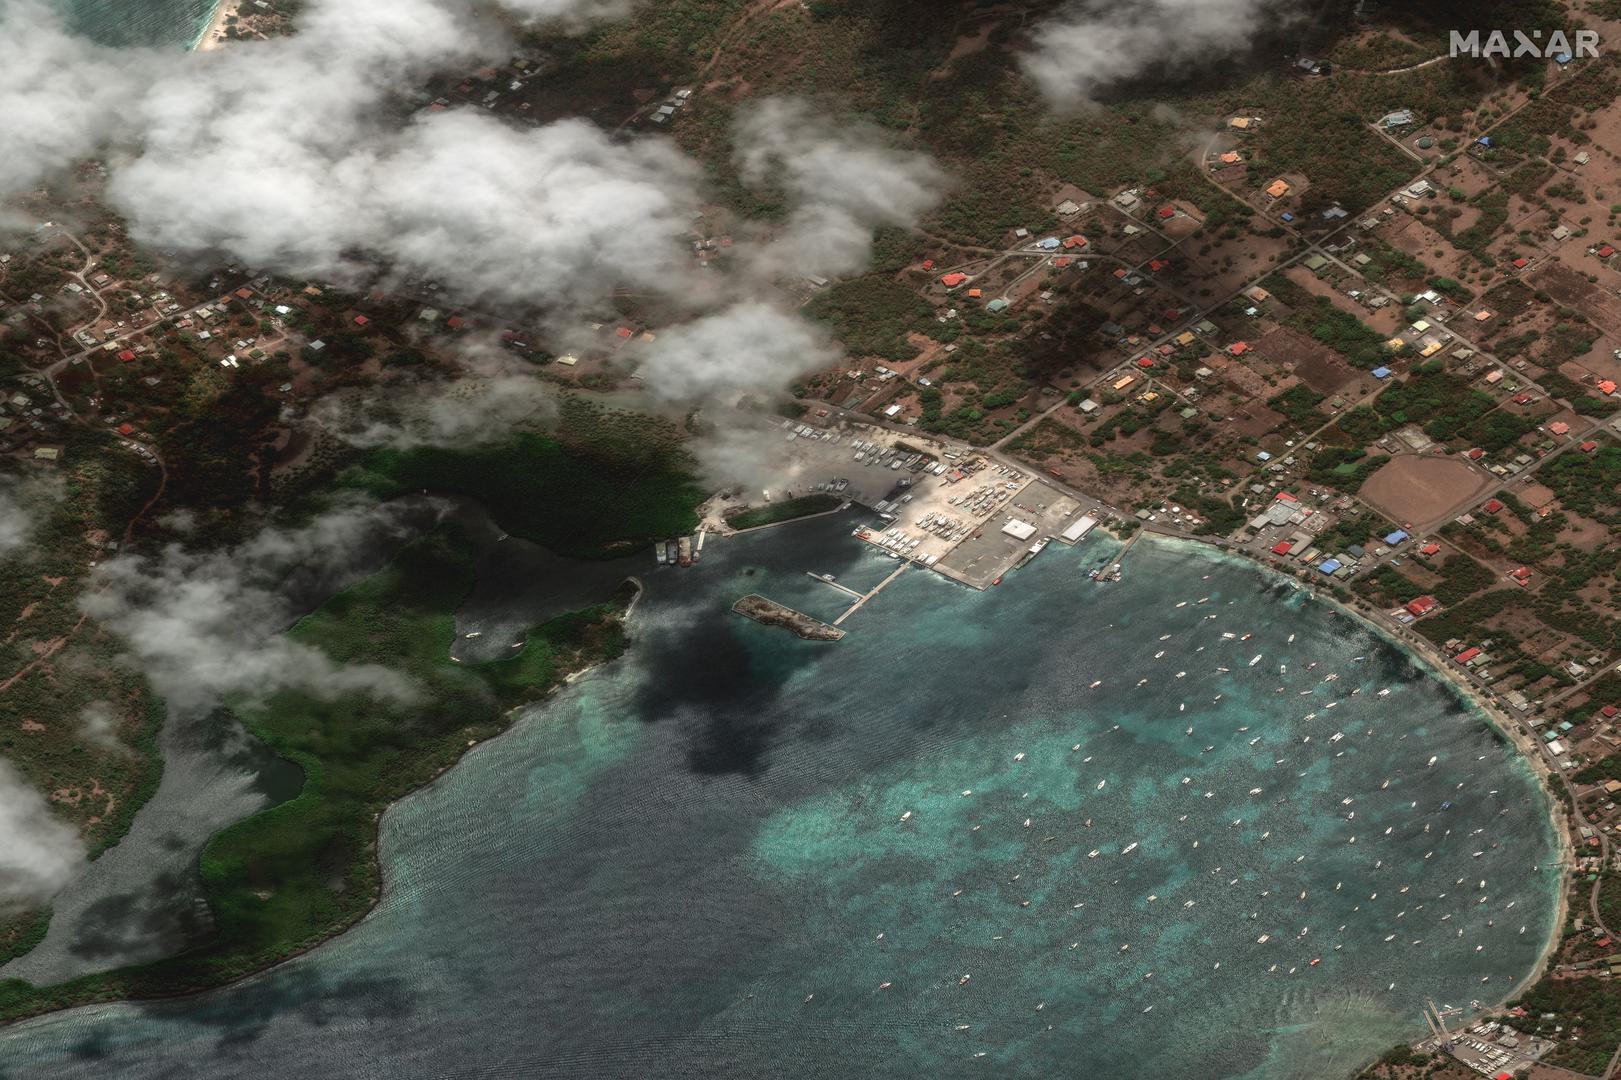 Obilnim kišama i jakim vjetrovima pogođene su susjedne otočne države, među kojima su i države Sveti Vincent i Grenadini te Sveta Lucija.